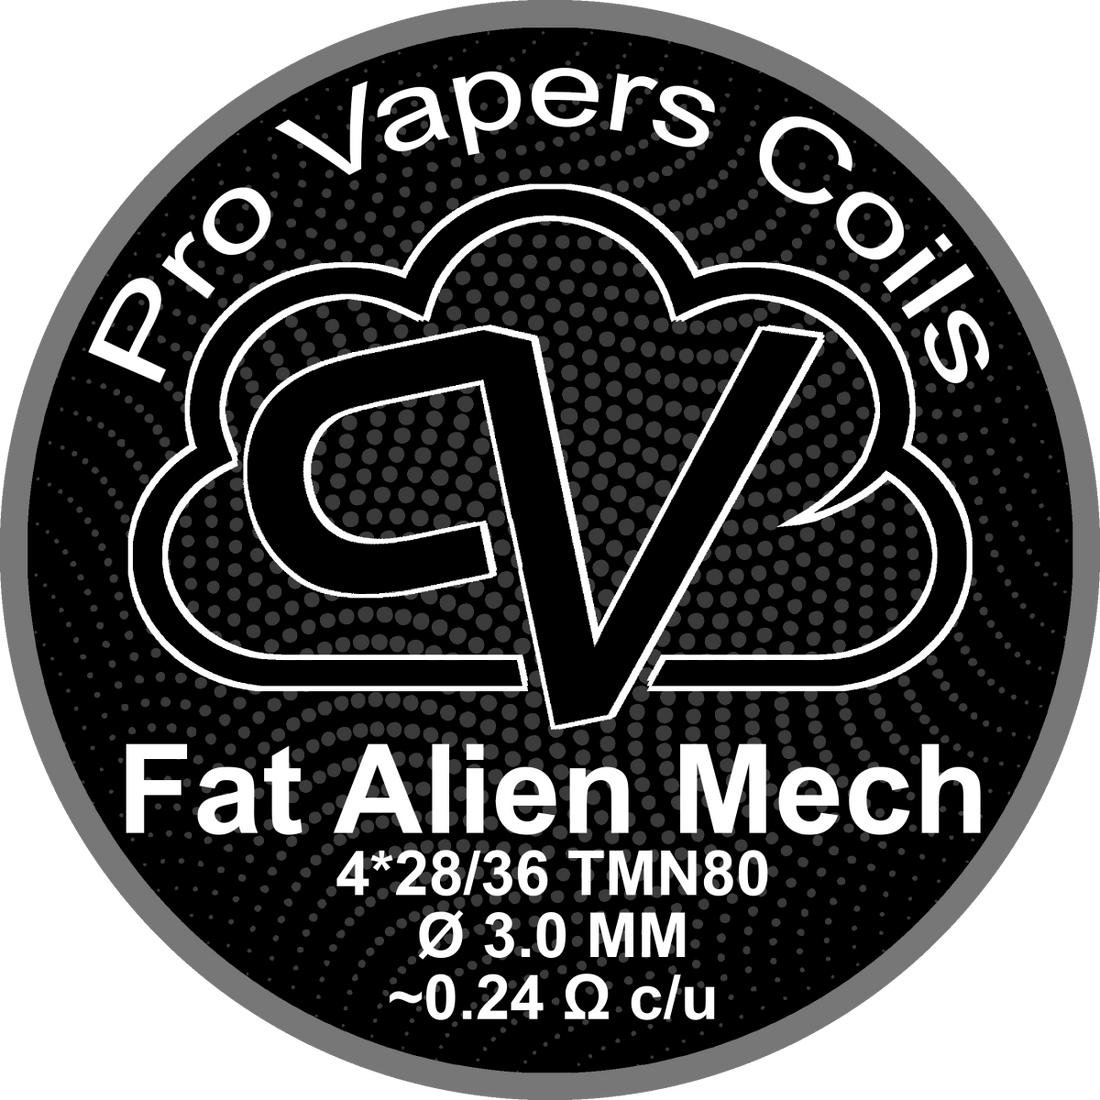 Fat Alien Mech - Pro Vapers - Resistencias Artesanales - DIY VAPE SHOP | RA-PVC-FAM-01